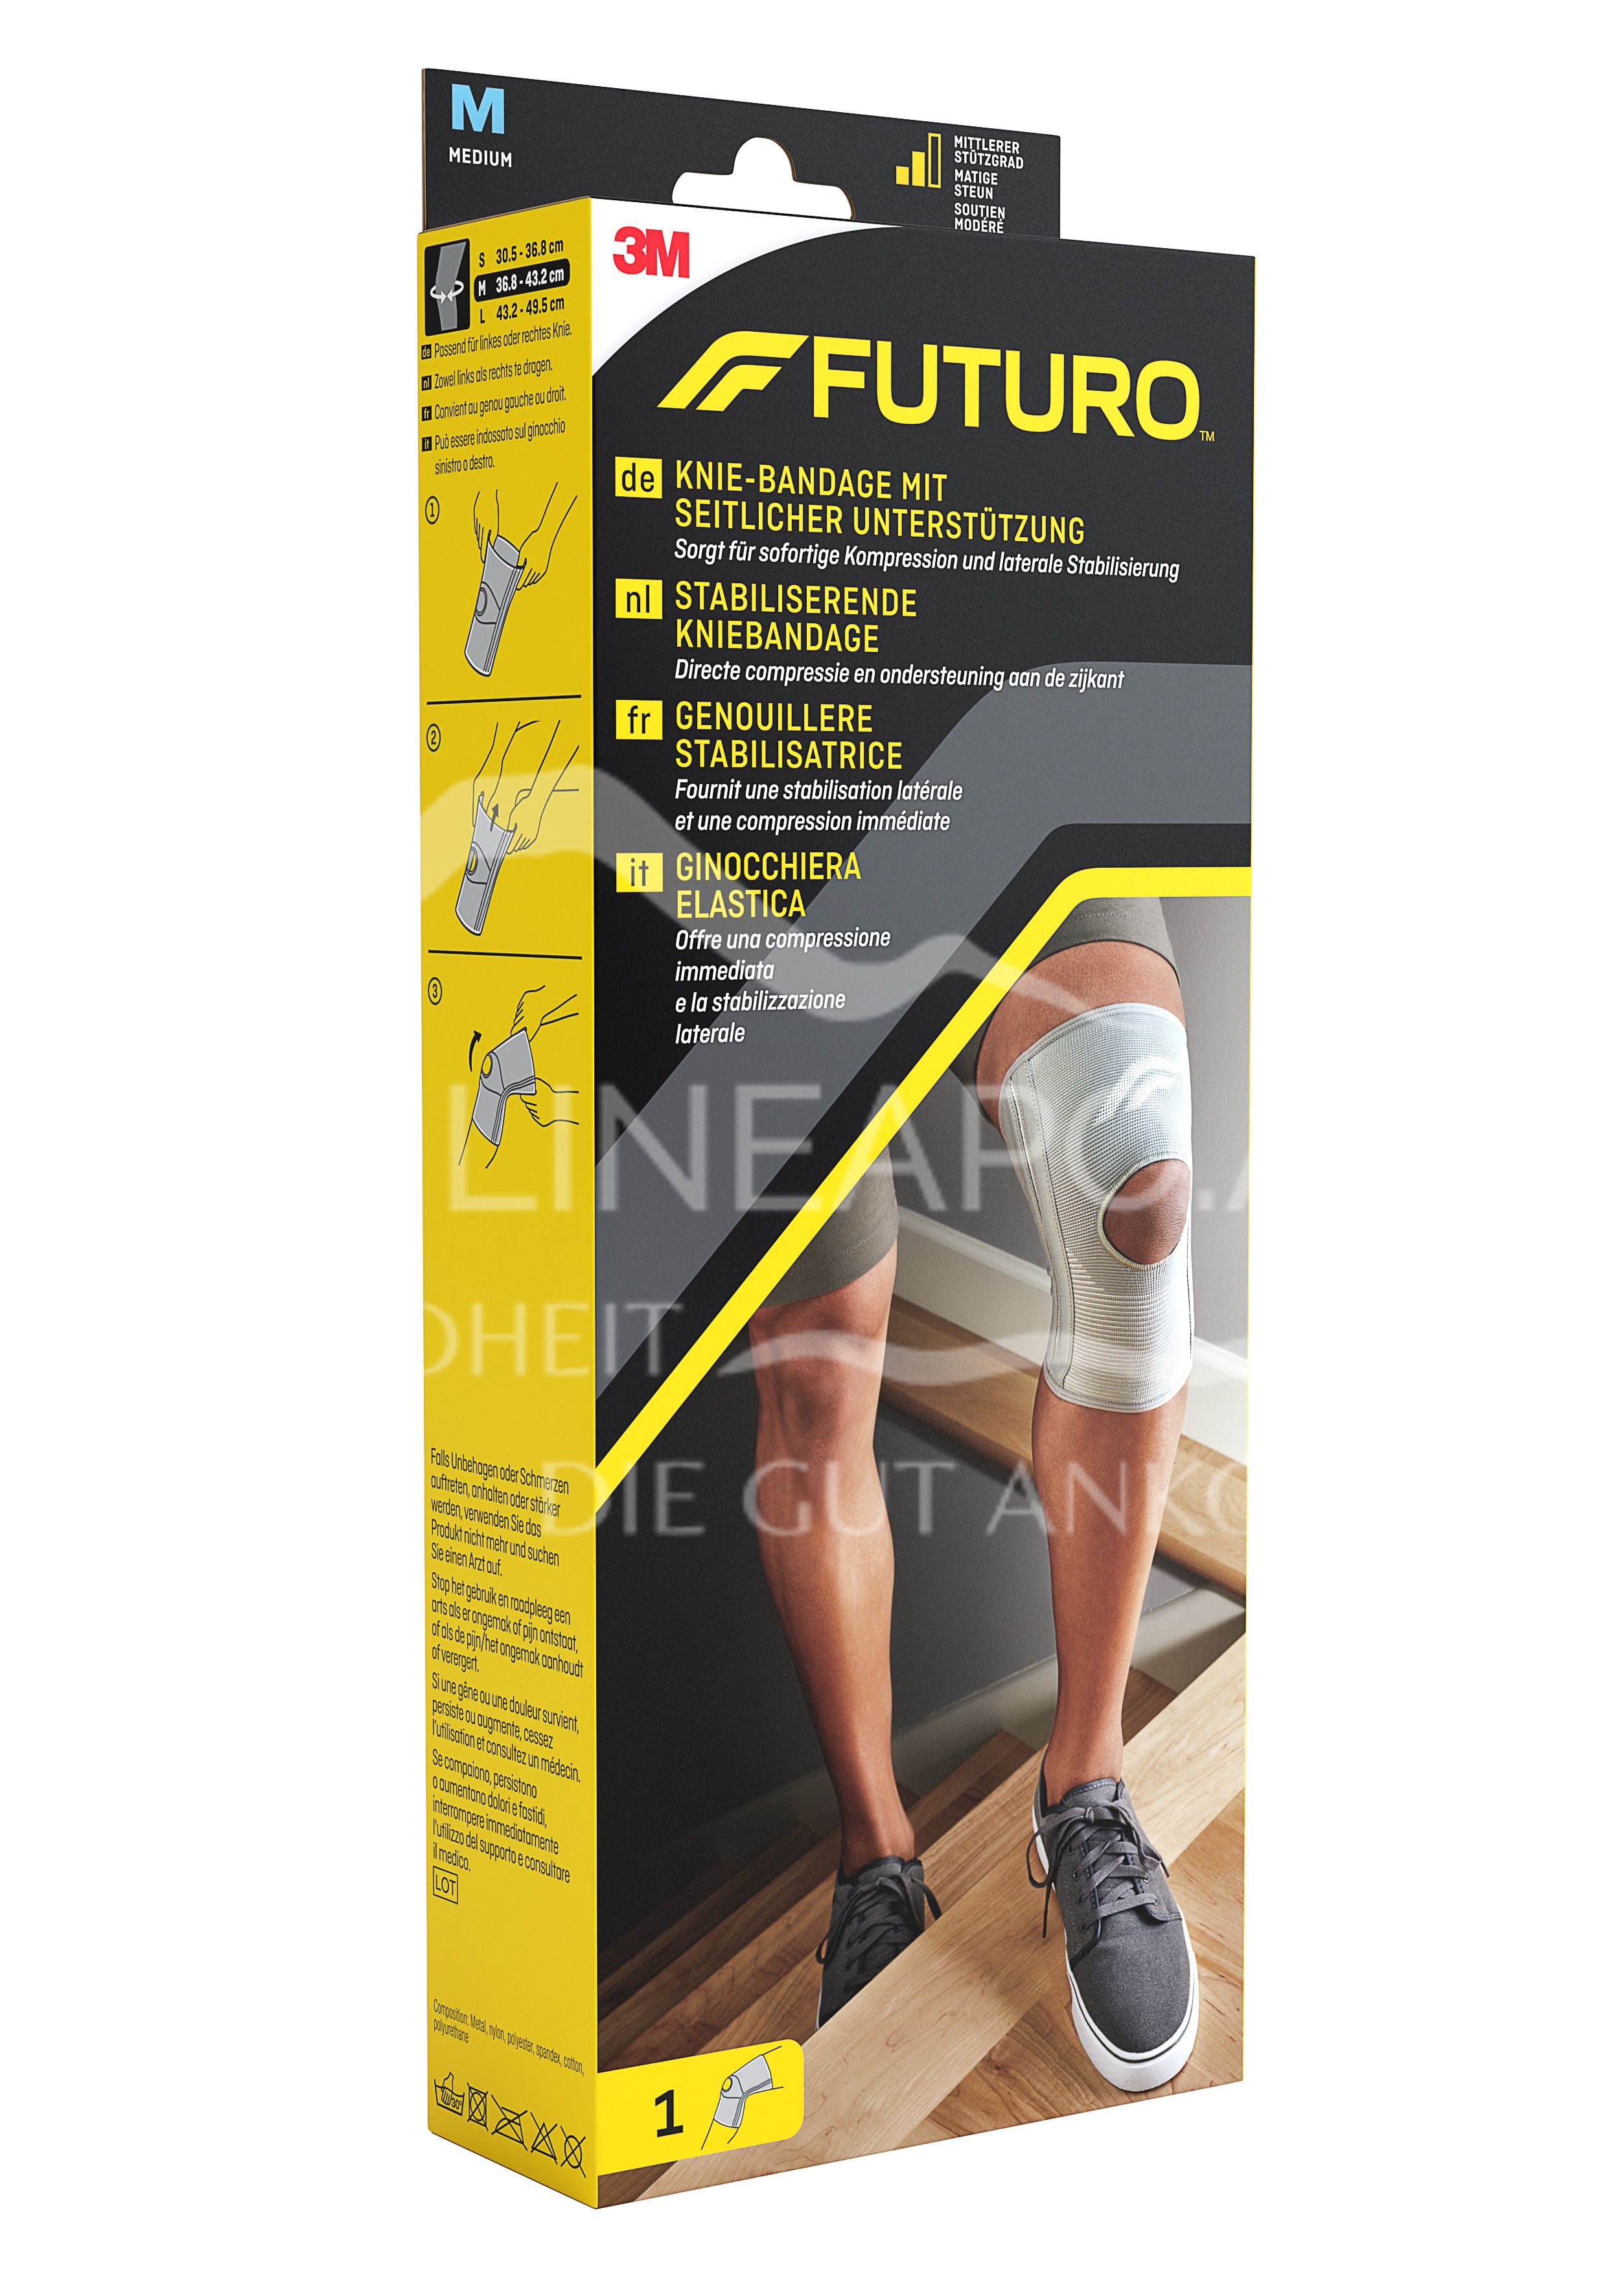 3M Futuro Knie-Bandage mit seitlicher Unterstützung 46164, Größe M